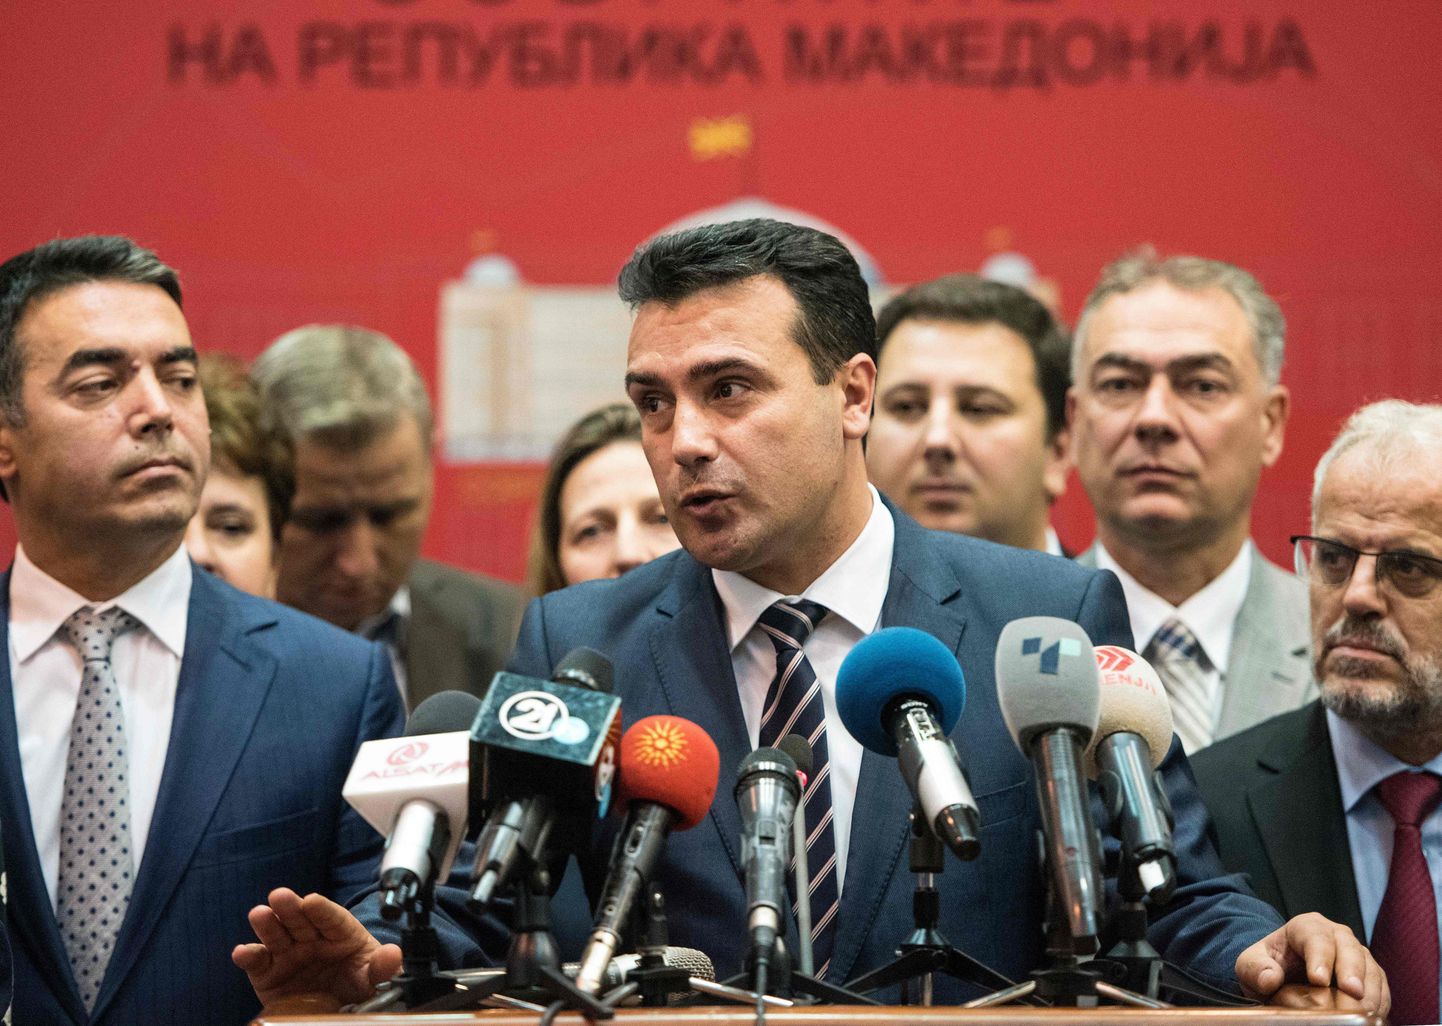 Makedoonia peaminister Zoran Zaev tervitas parlamendi toetust nimevahetusprotsessi alustamisele.